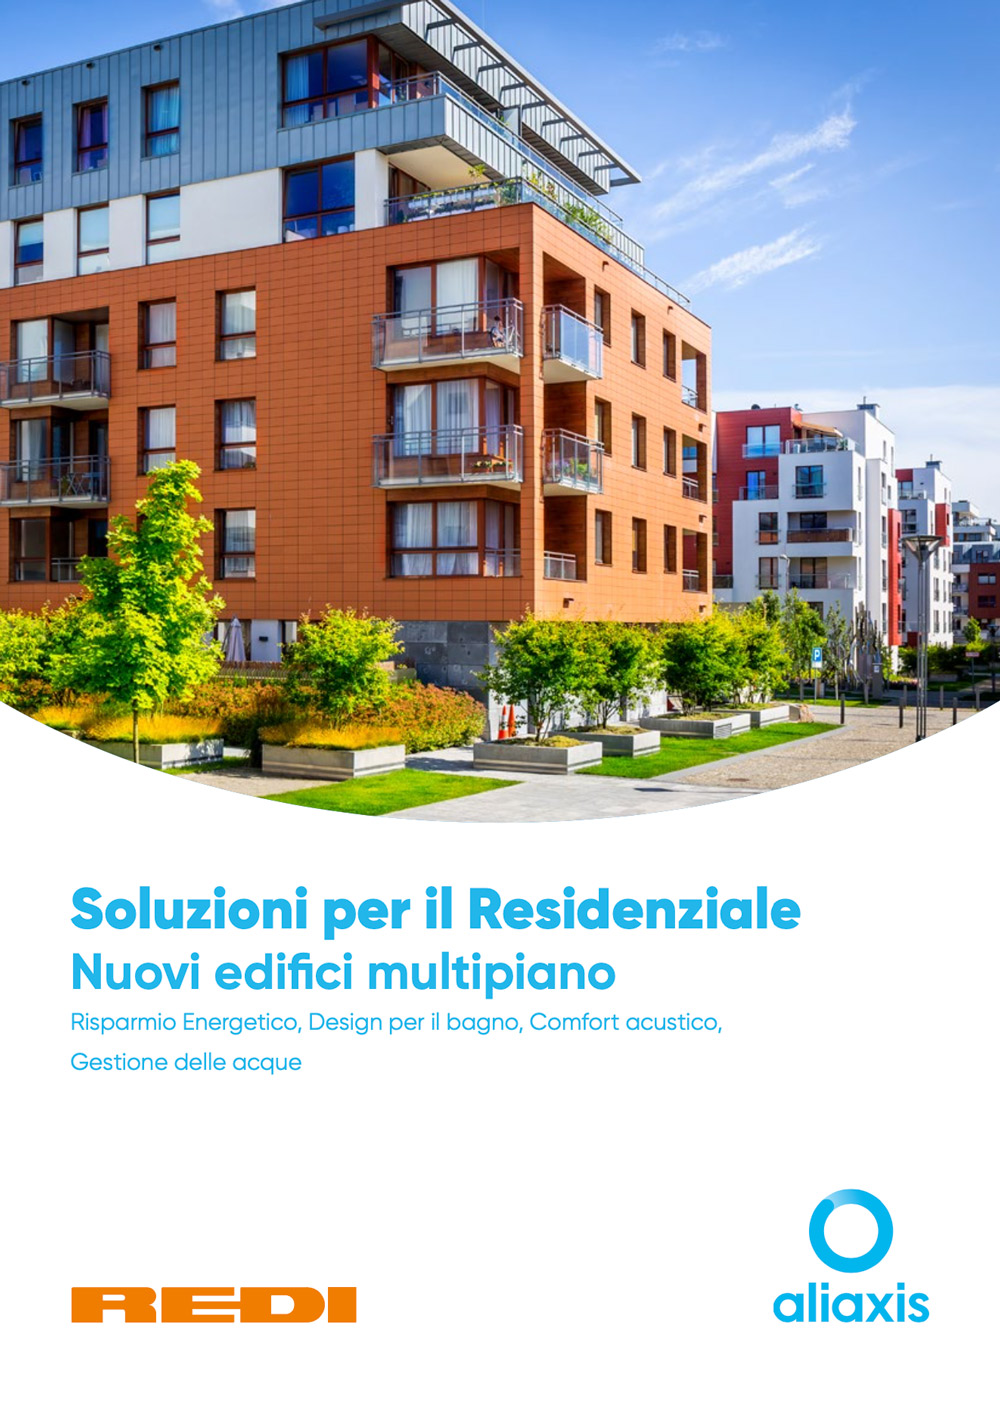 Soluzioni per il residenziale - nuovi edifici multipiano